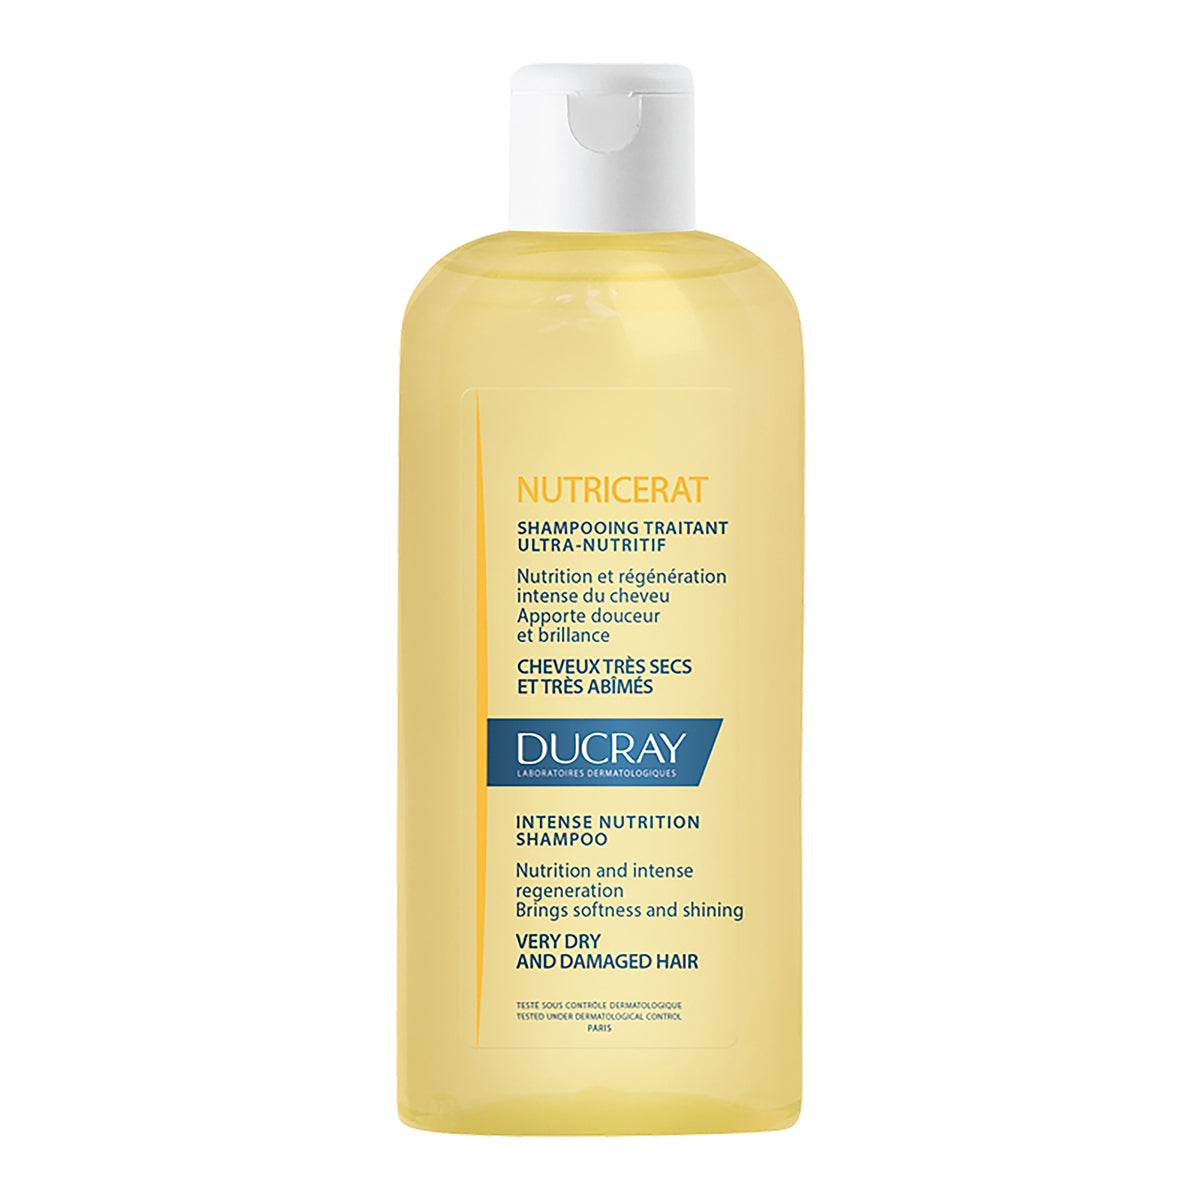 Ducray nutricerat shampoo reparador nutritivo 200ml.